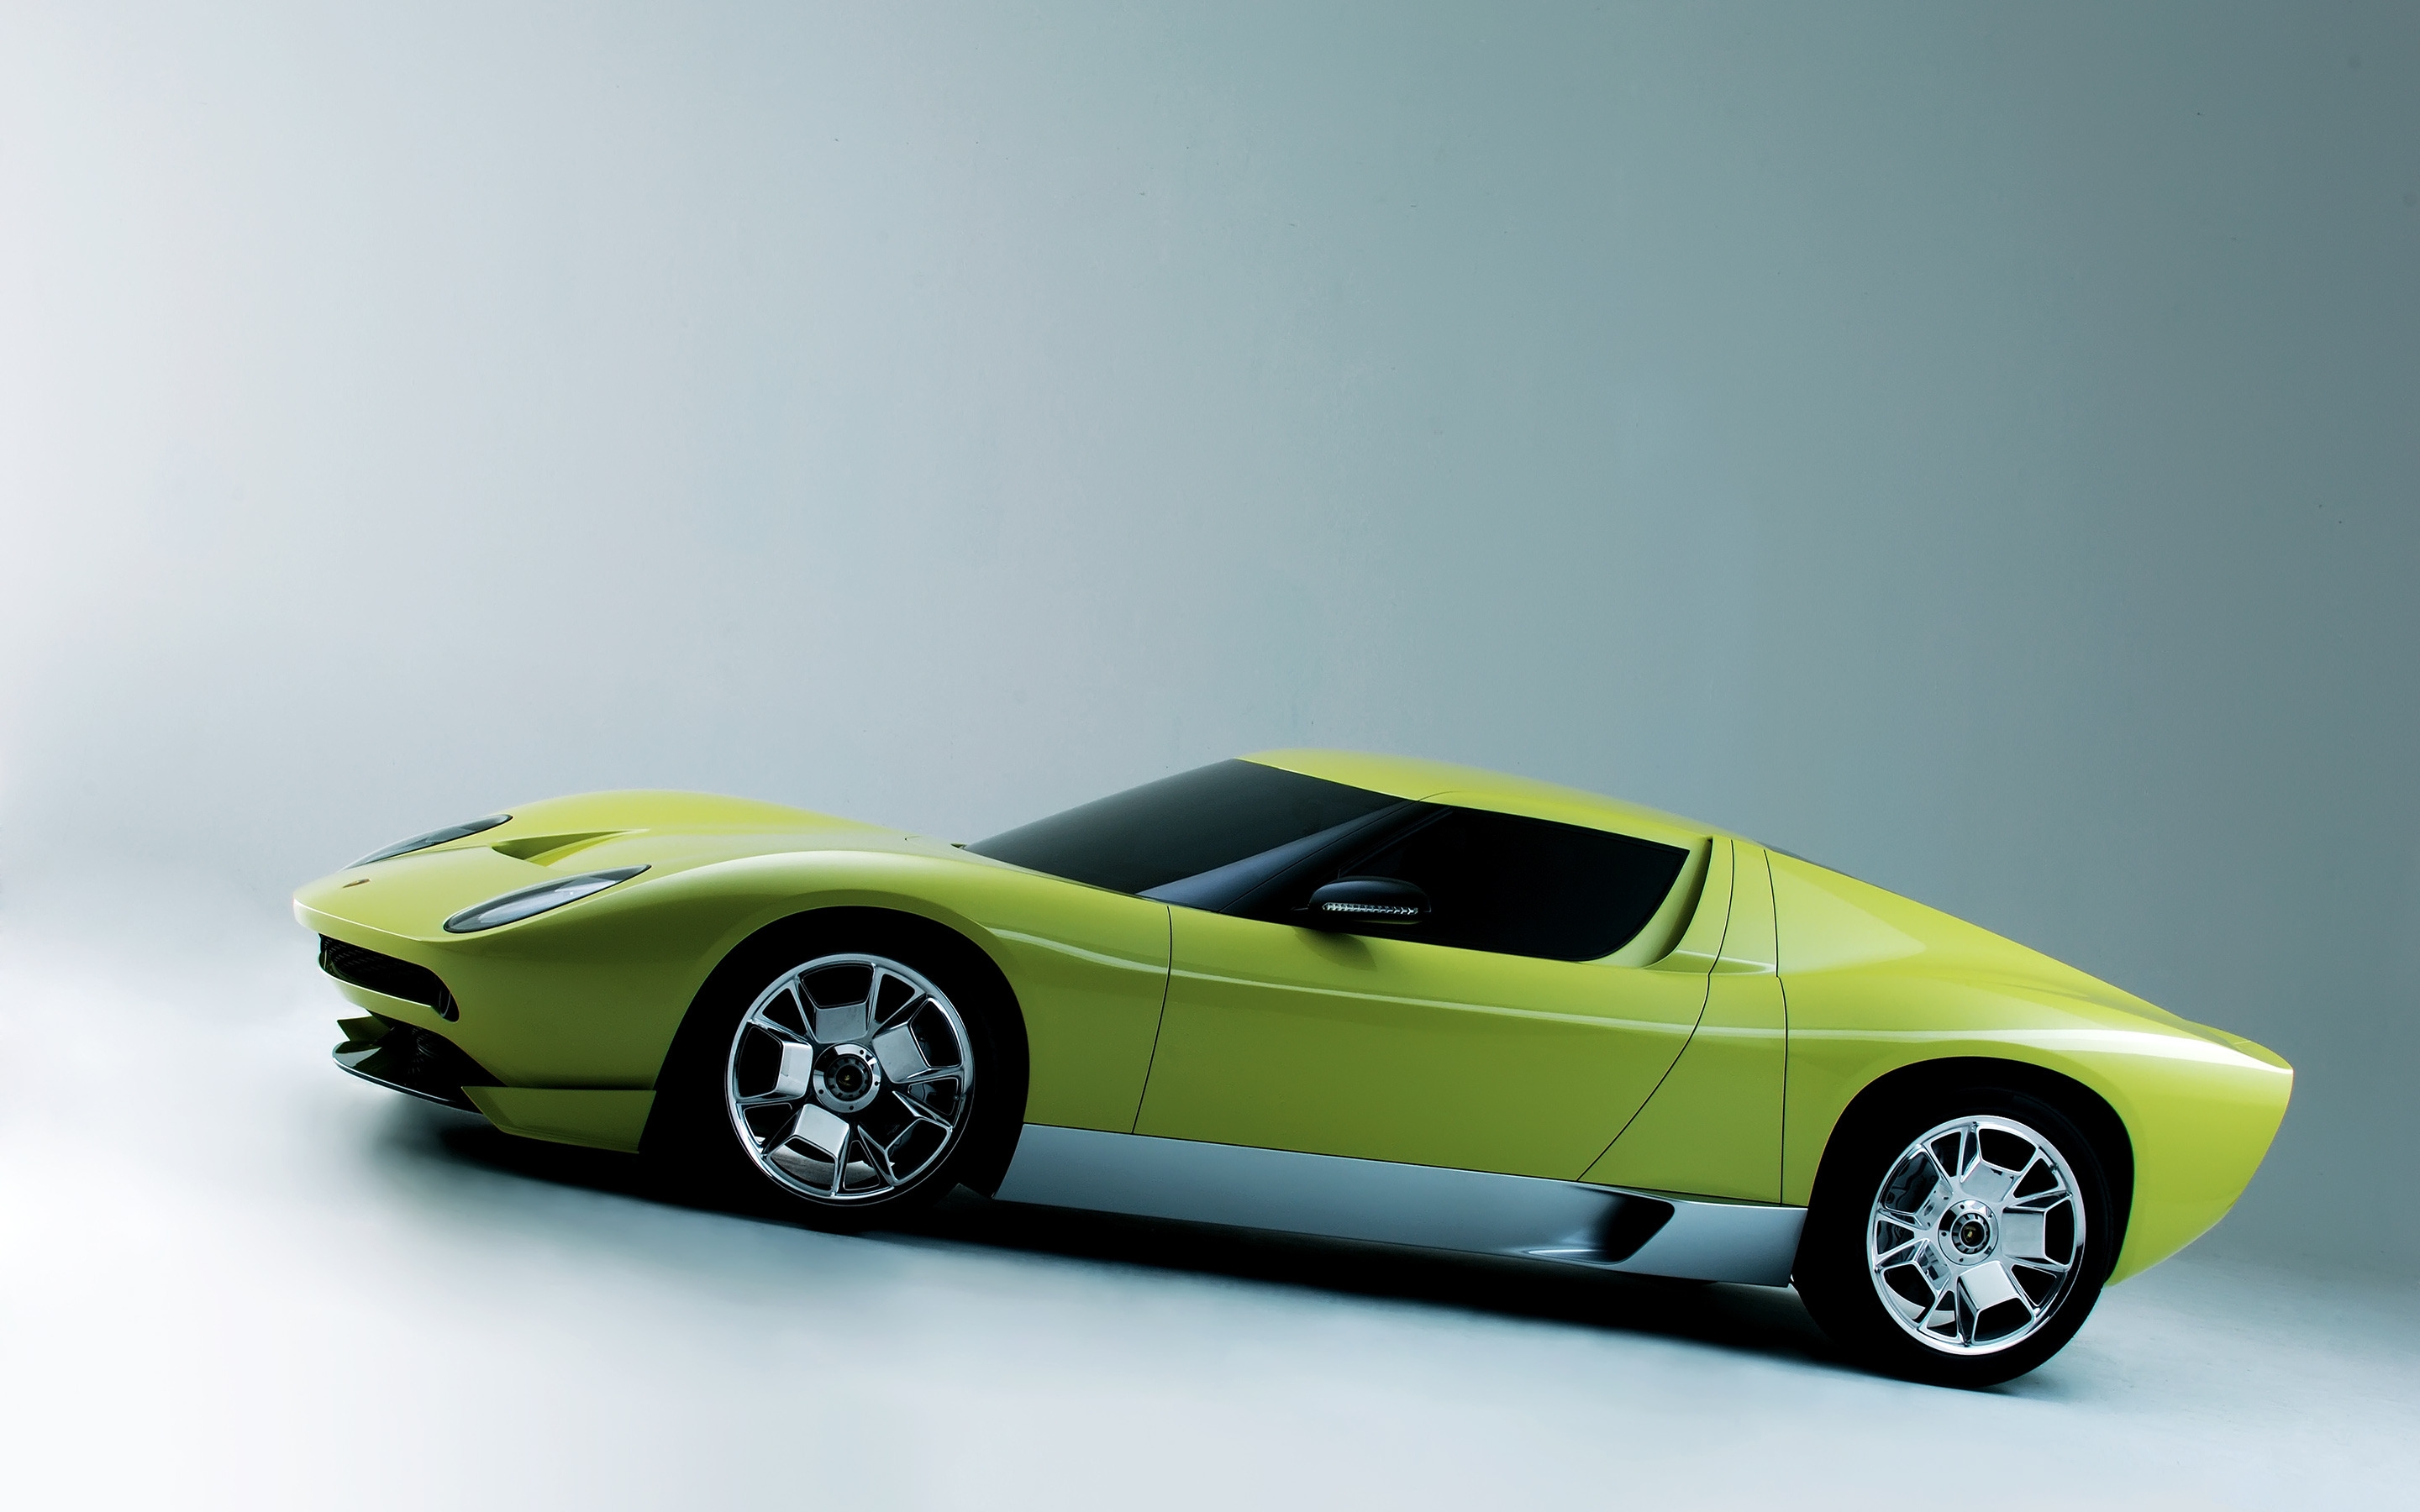 Lamborghini Miura Concept Side for 2880 x 1800 Retina Display resolution